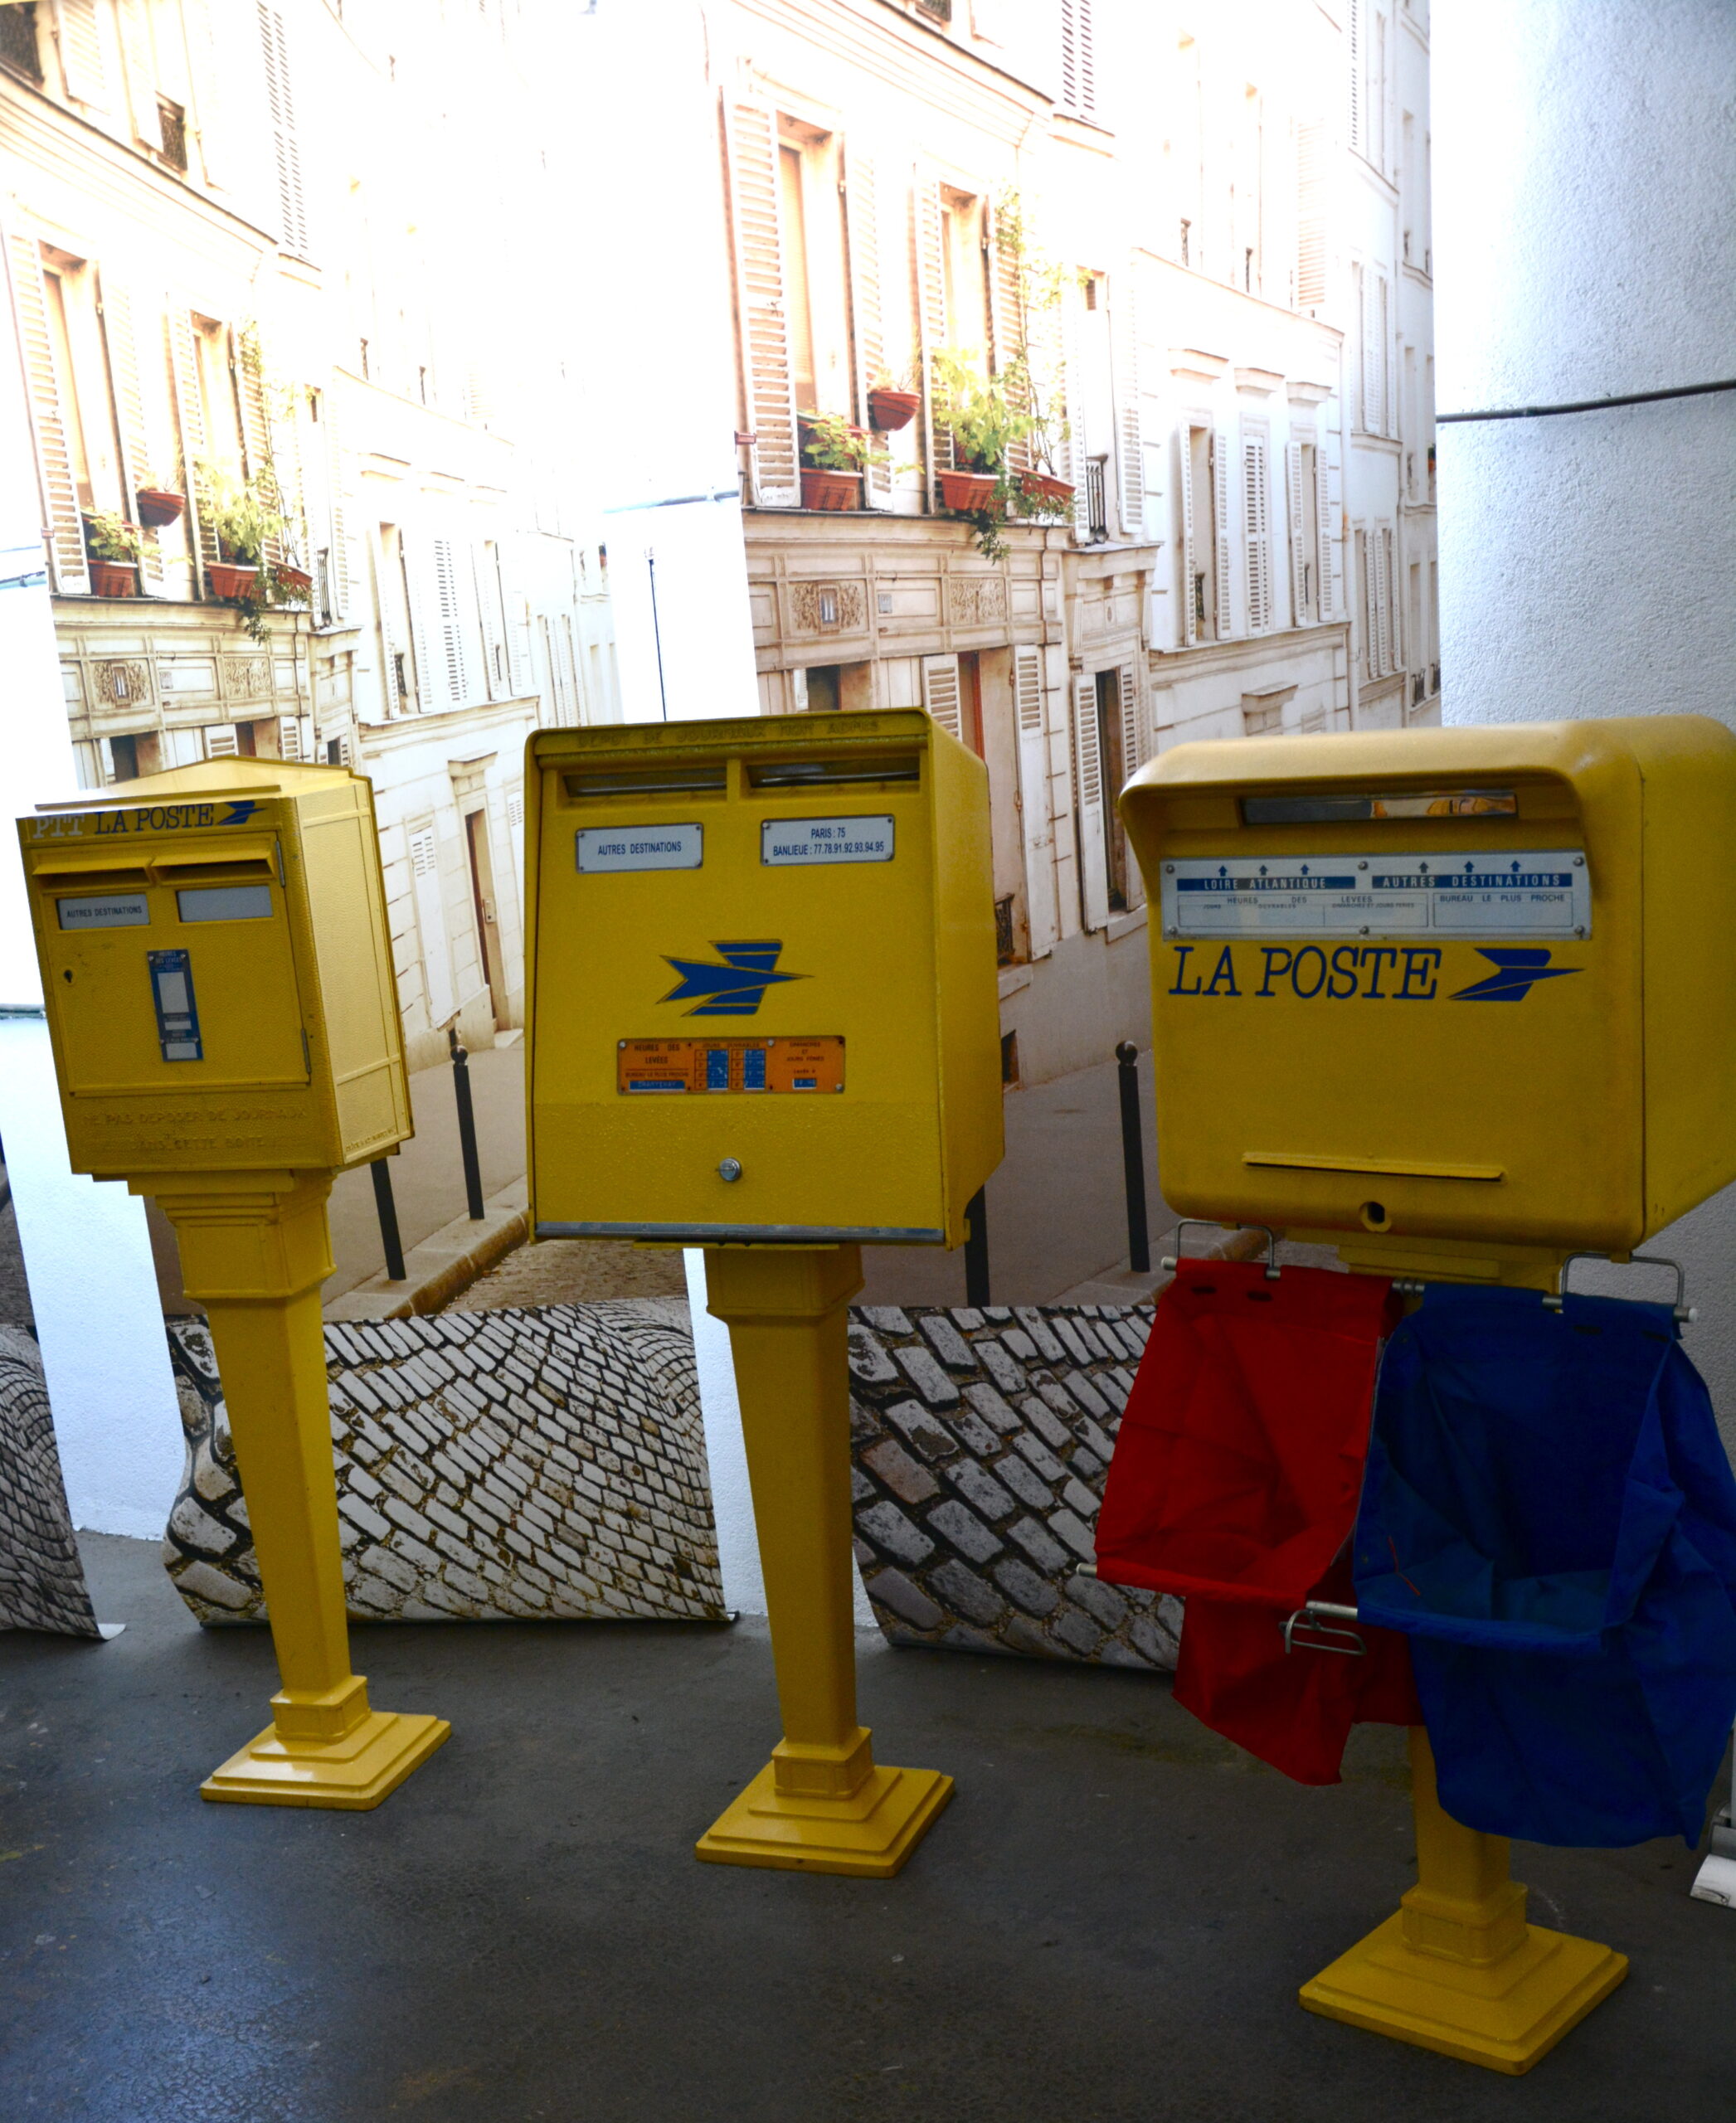 Découvrez l'histoire postale française à travers ces anciennes boîtes aux lettres de La Poste. Leur design classique et leur charme rétro captivent l'essence du courrier d'autrefois, rappelant une époque où le papier et l'encre étaient les messagers privilégiés. Une réminiscence charmante du passé postal français.